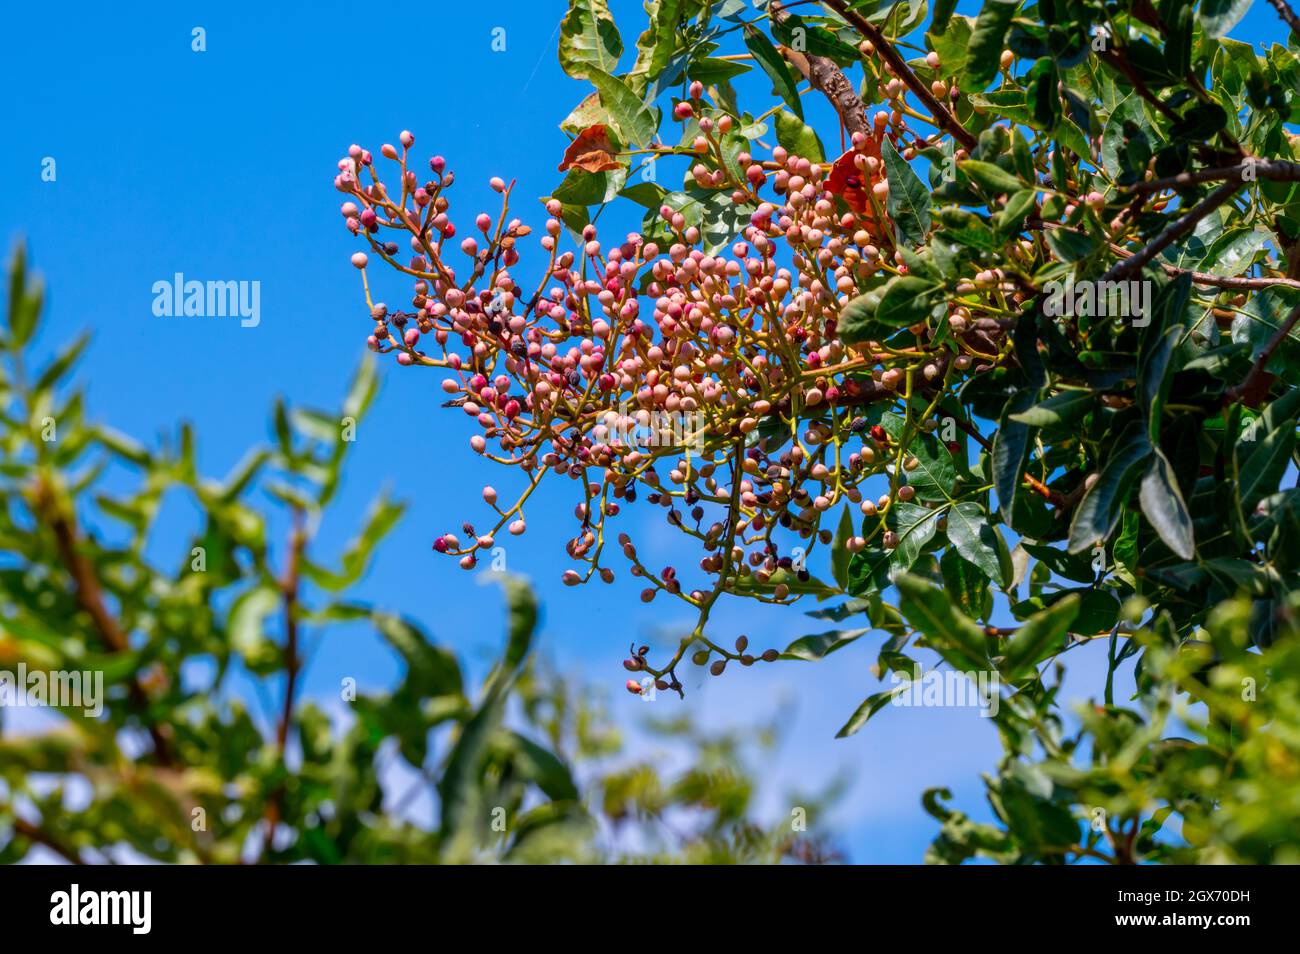 Jeunes pistaches non mûres poussant sur les plantations de pistaches à Chypre Banque D'Images